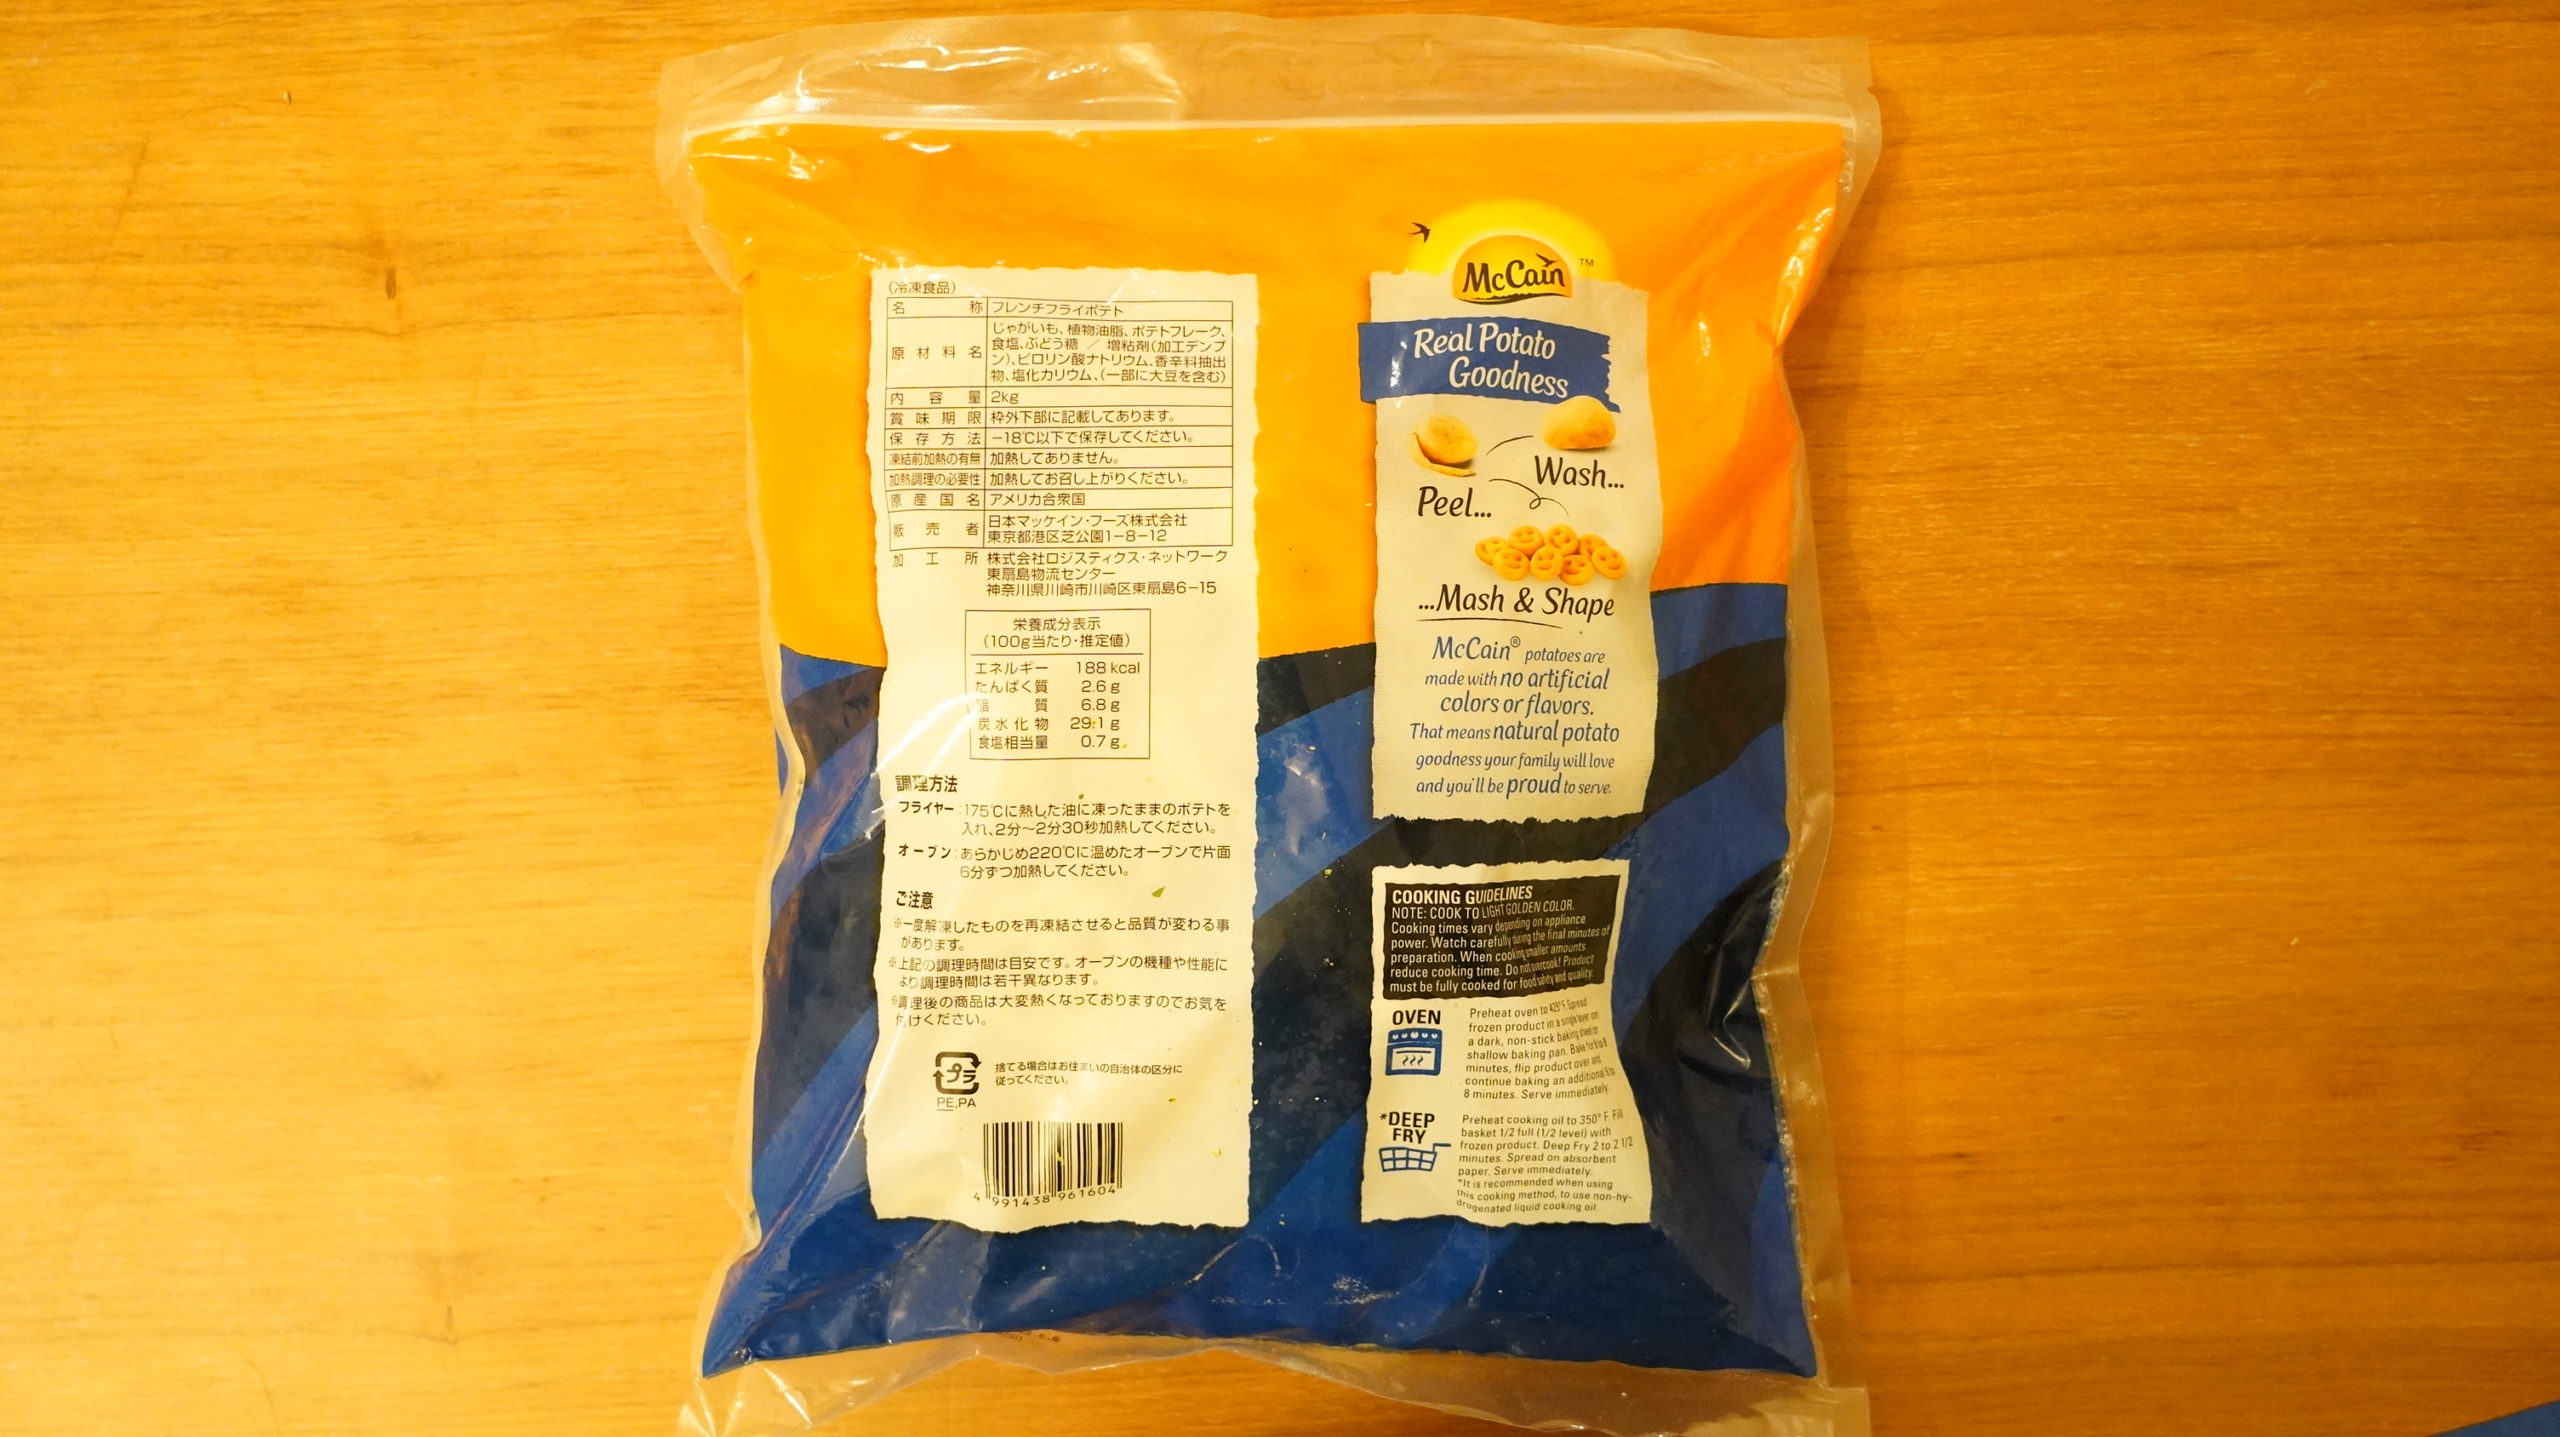 コストコの冷凍食品「マッケイン・スマイルポテト」のパッケージ裏面の写真